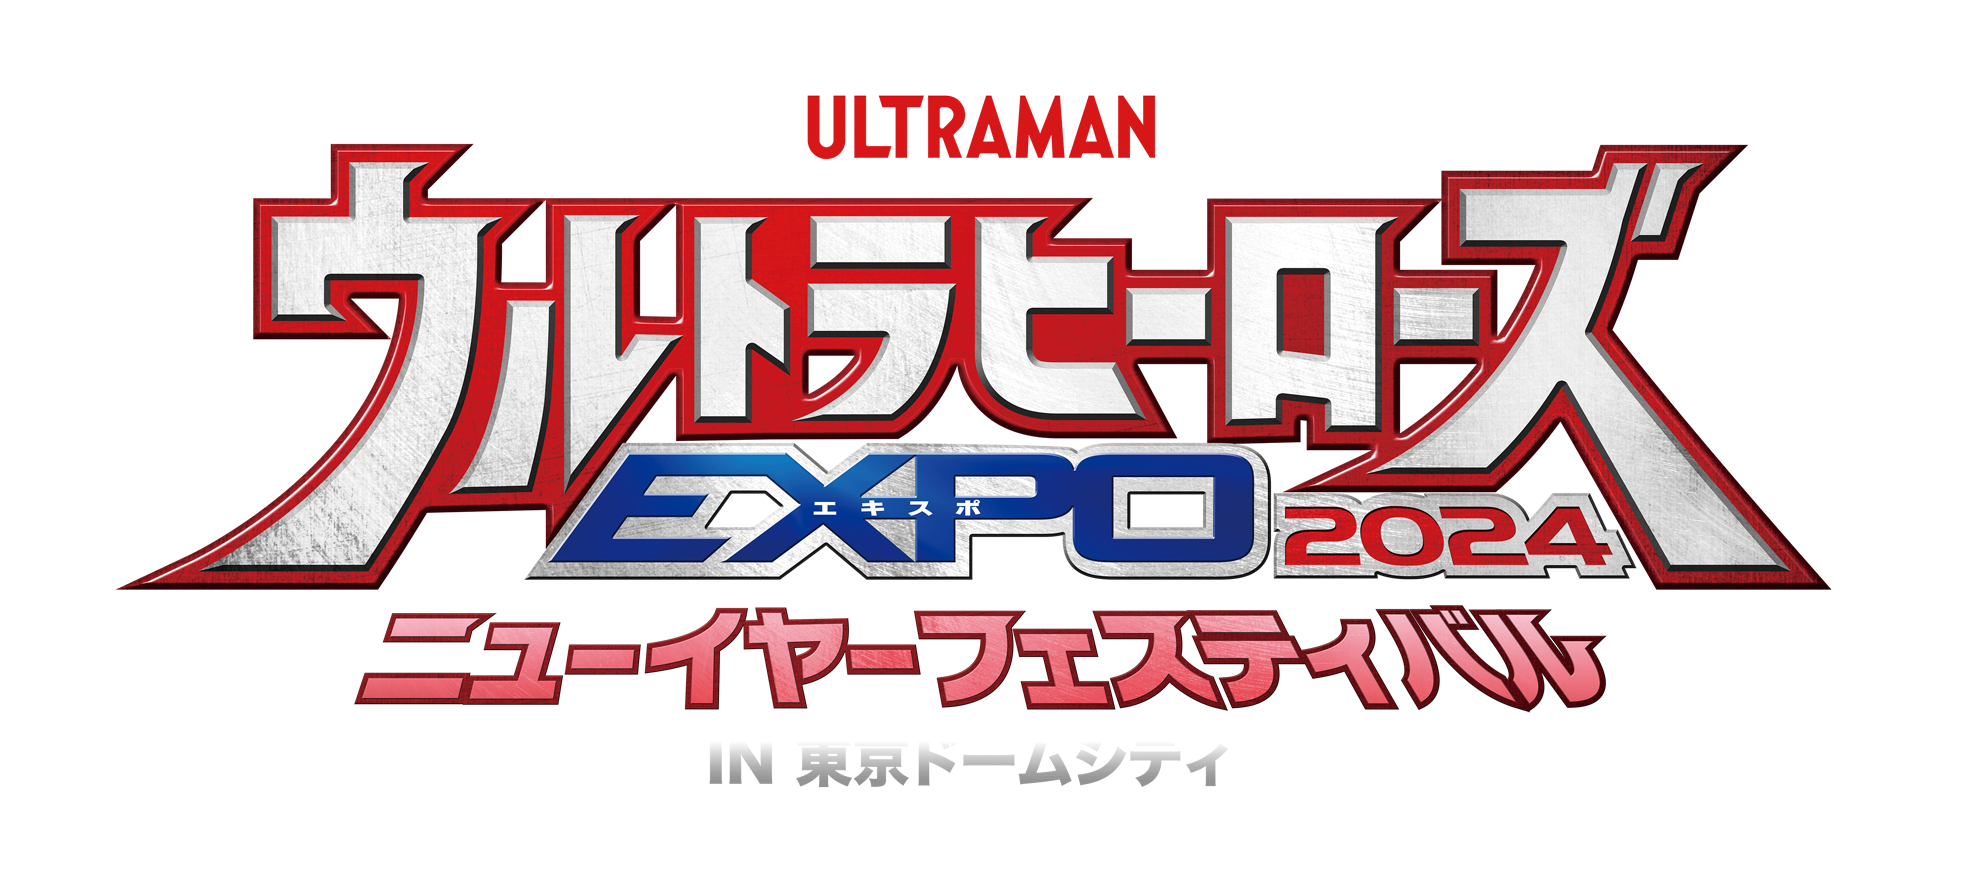 開催概要 ウルトラヒーローズEXPO 2024 ニューイヤーフェスティバル IN 東京ドームシティ